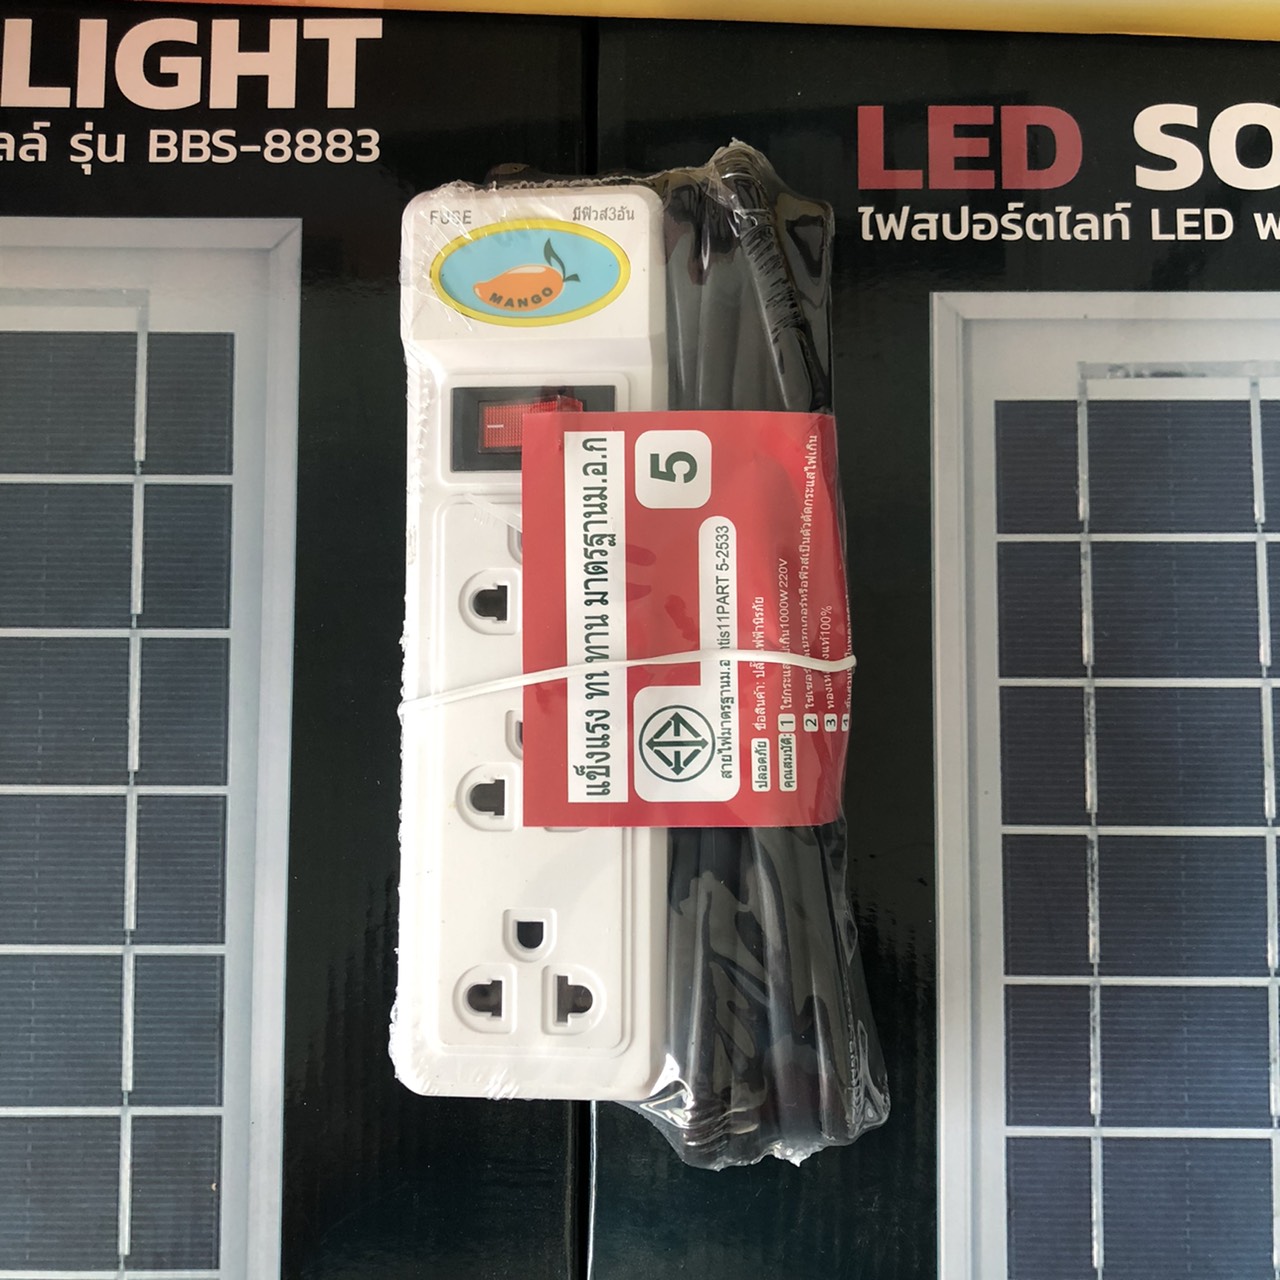 LED ปลั๊กไฟ 5ช่อง 1สวิตซ์ สามารถใช้กับเครื่องใช้ไฟฟ้าทั่วไป ปลั๊กไฟ 3ช่อง 1สวิตซ์ สามารถใช้กับเครื่องใช้ไฟฟ้าทั่วไป